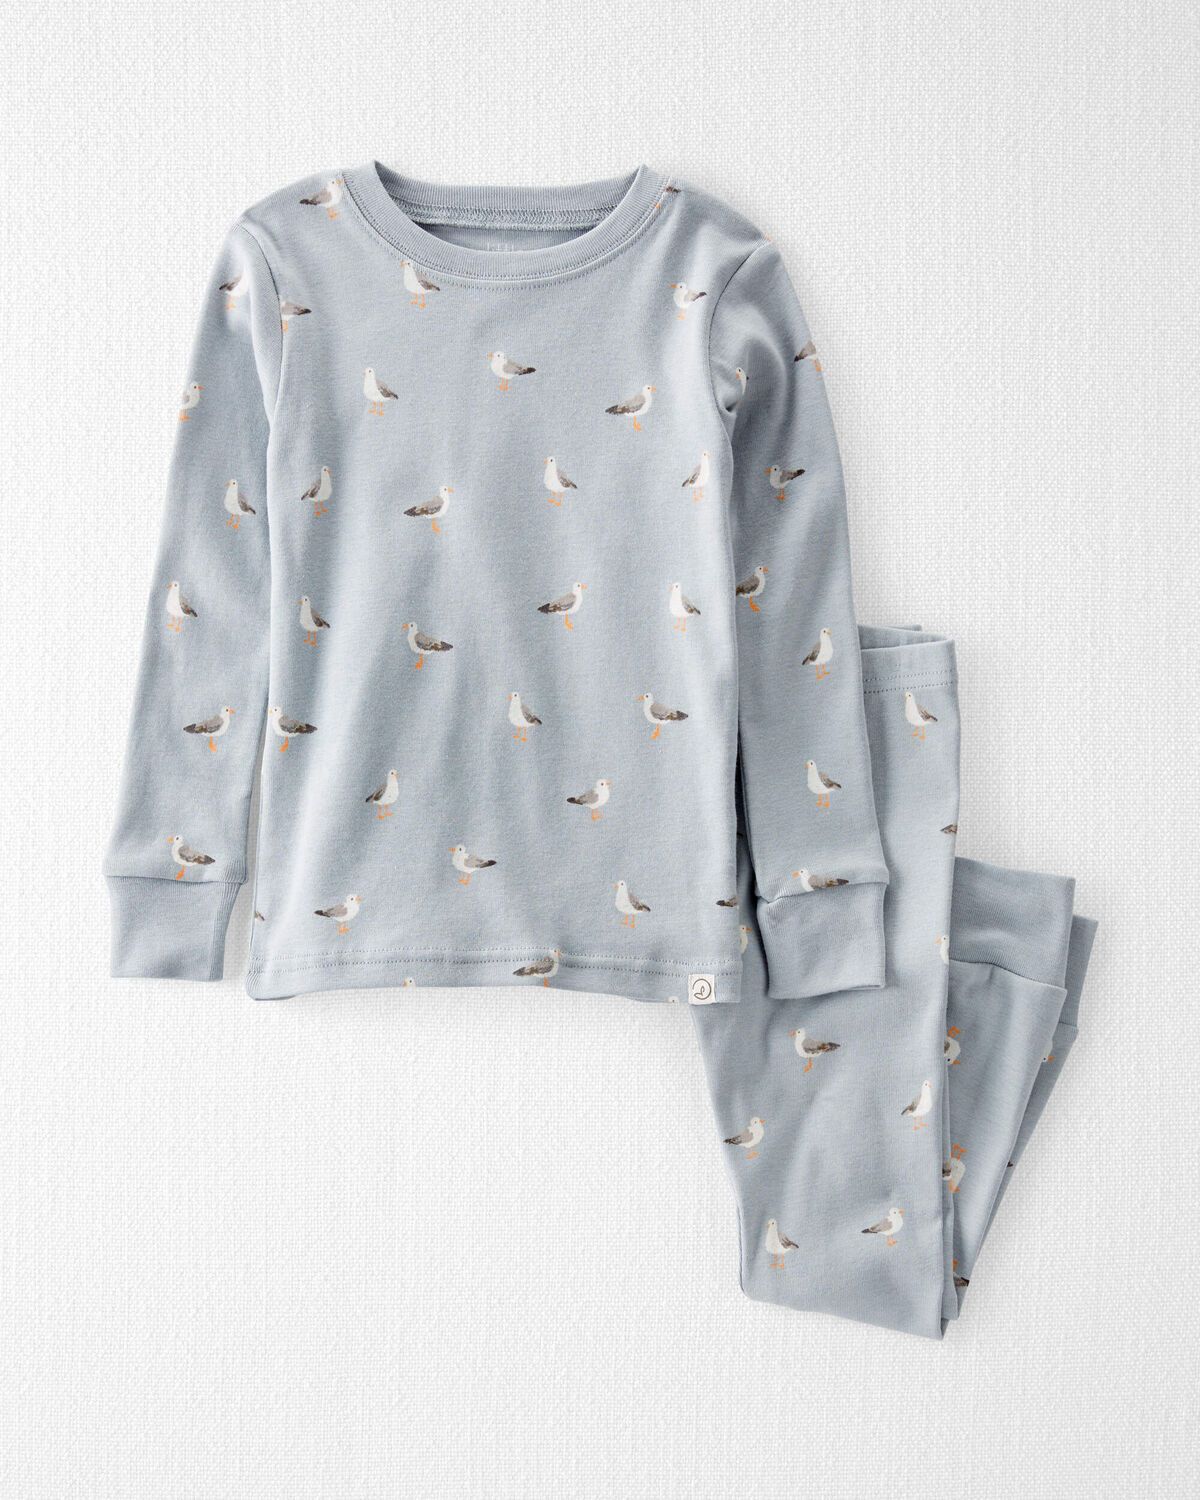 Beach Seagull Print Toddler Organic Cotton Pajamas Set | carters.com | Carter's